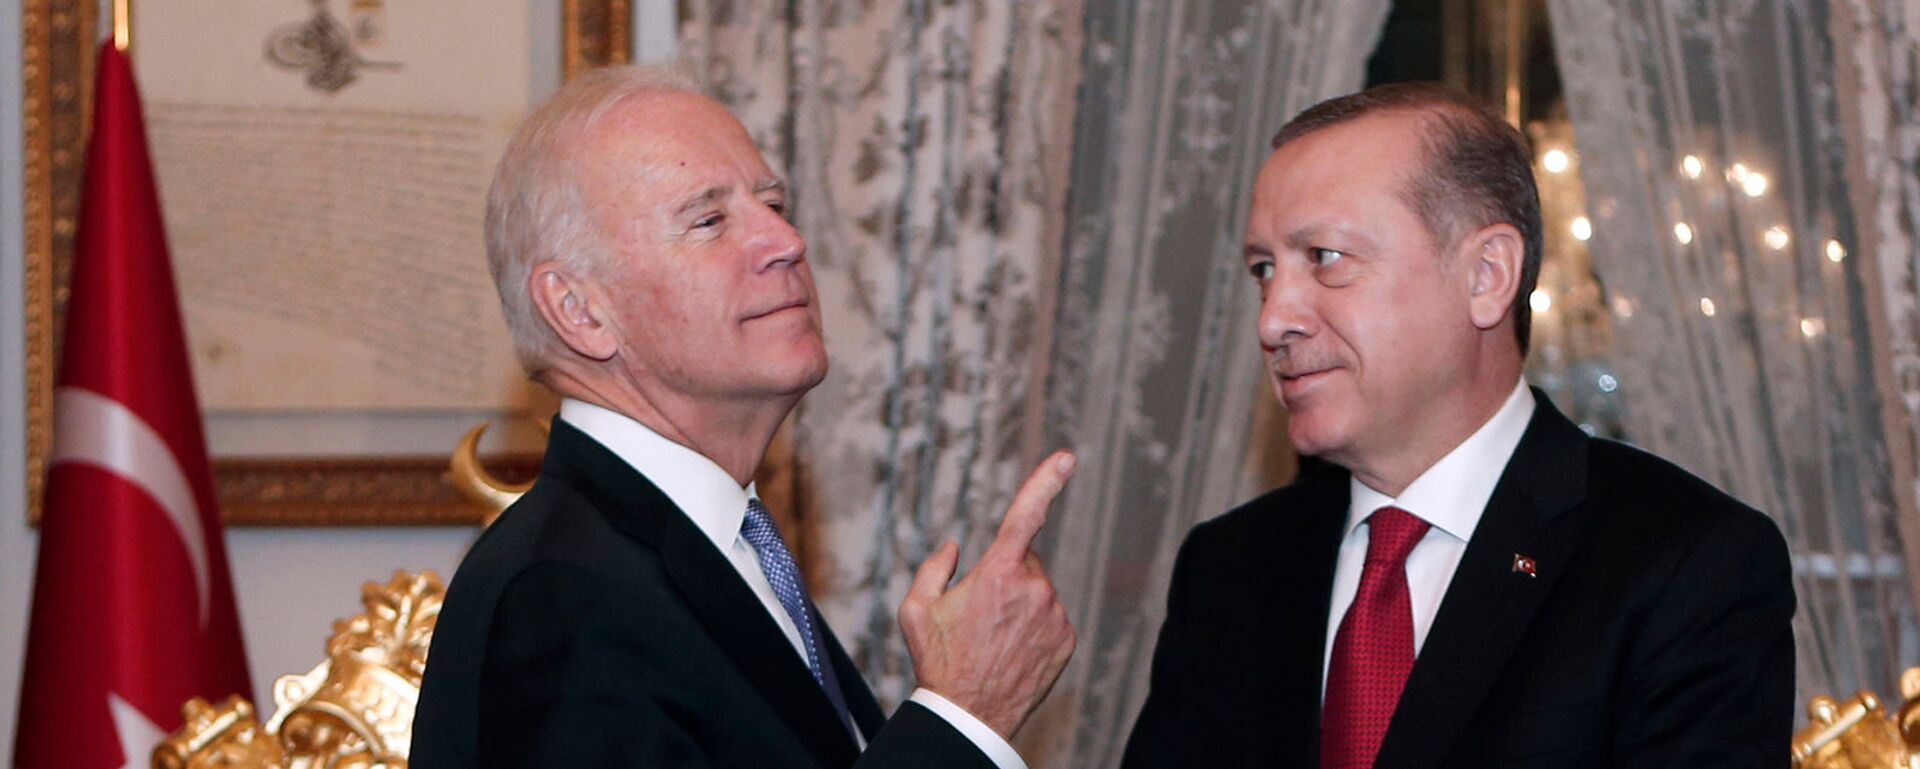 Беседа вице-президента США Джо Байдена с президентом Турции Реджепом Тайипом Эрдоганом после их встречи во Дворце Йылдыз Мабейн (23 января 2016). Стамбул - Sputnik Армения, 1920, 21.01.2021